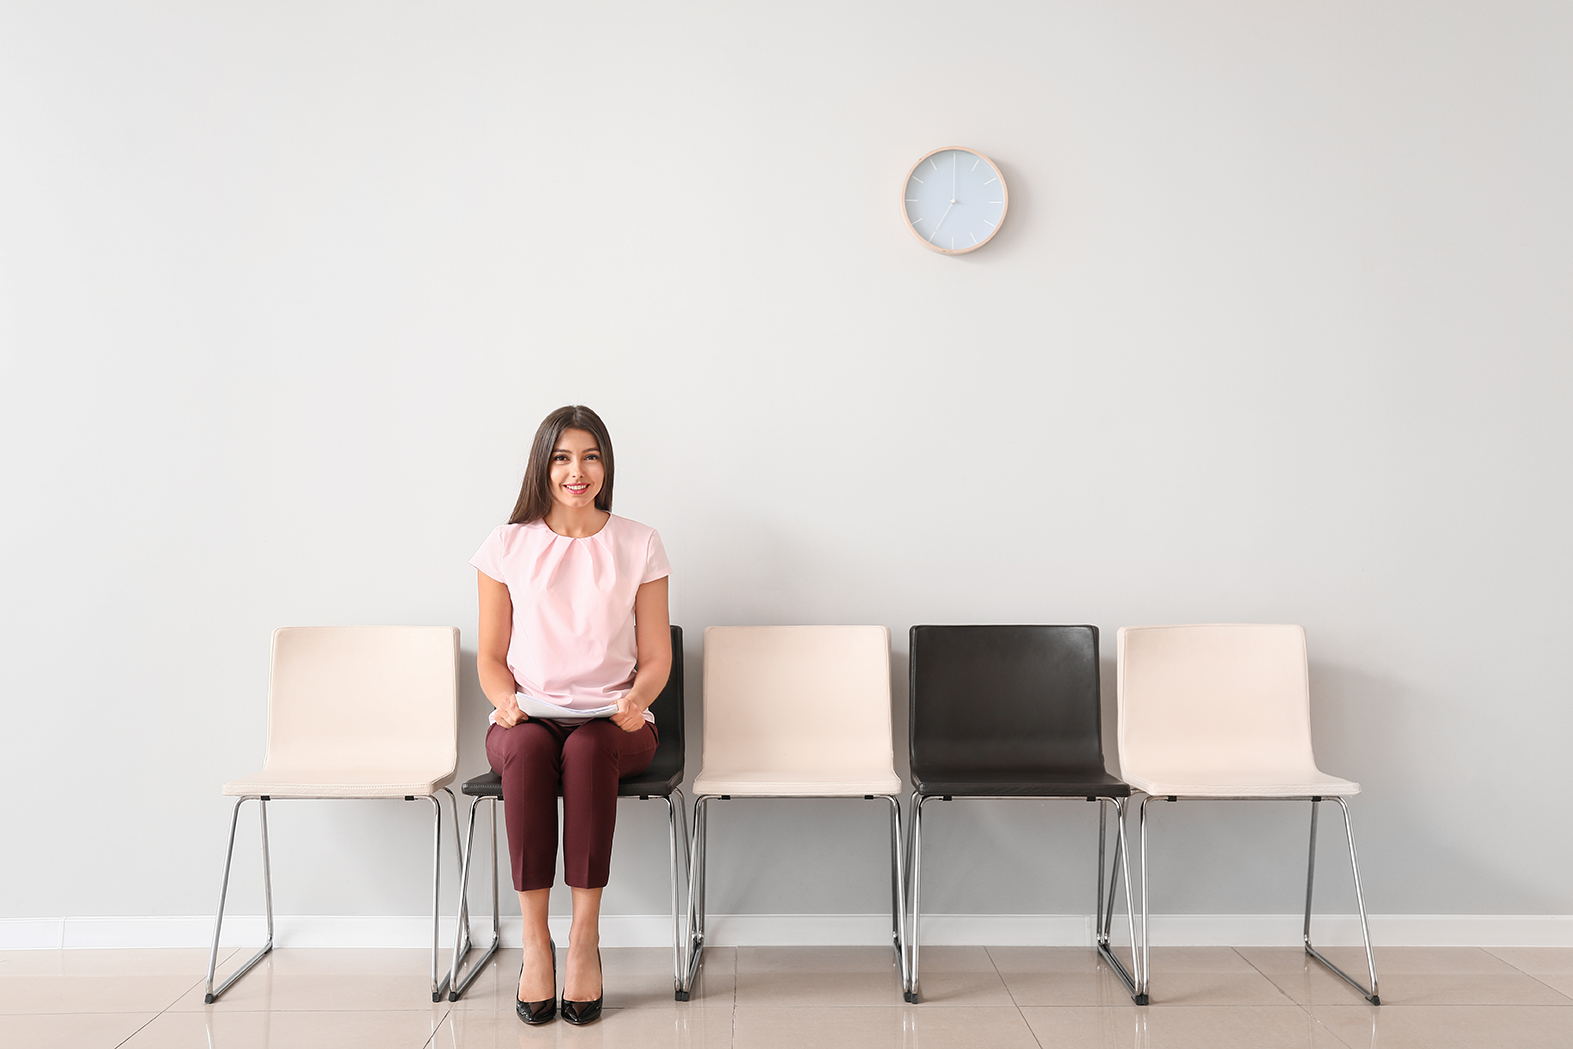 Mujer sentada en una banca esperando su turno para entrevista laboral, representando cómo prepararse para encontrar el trabajo soñado